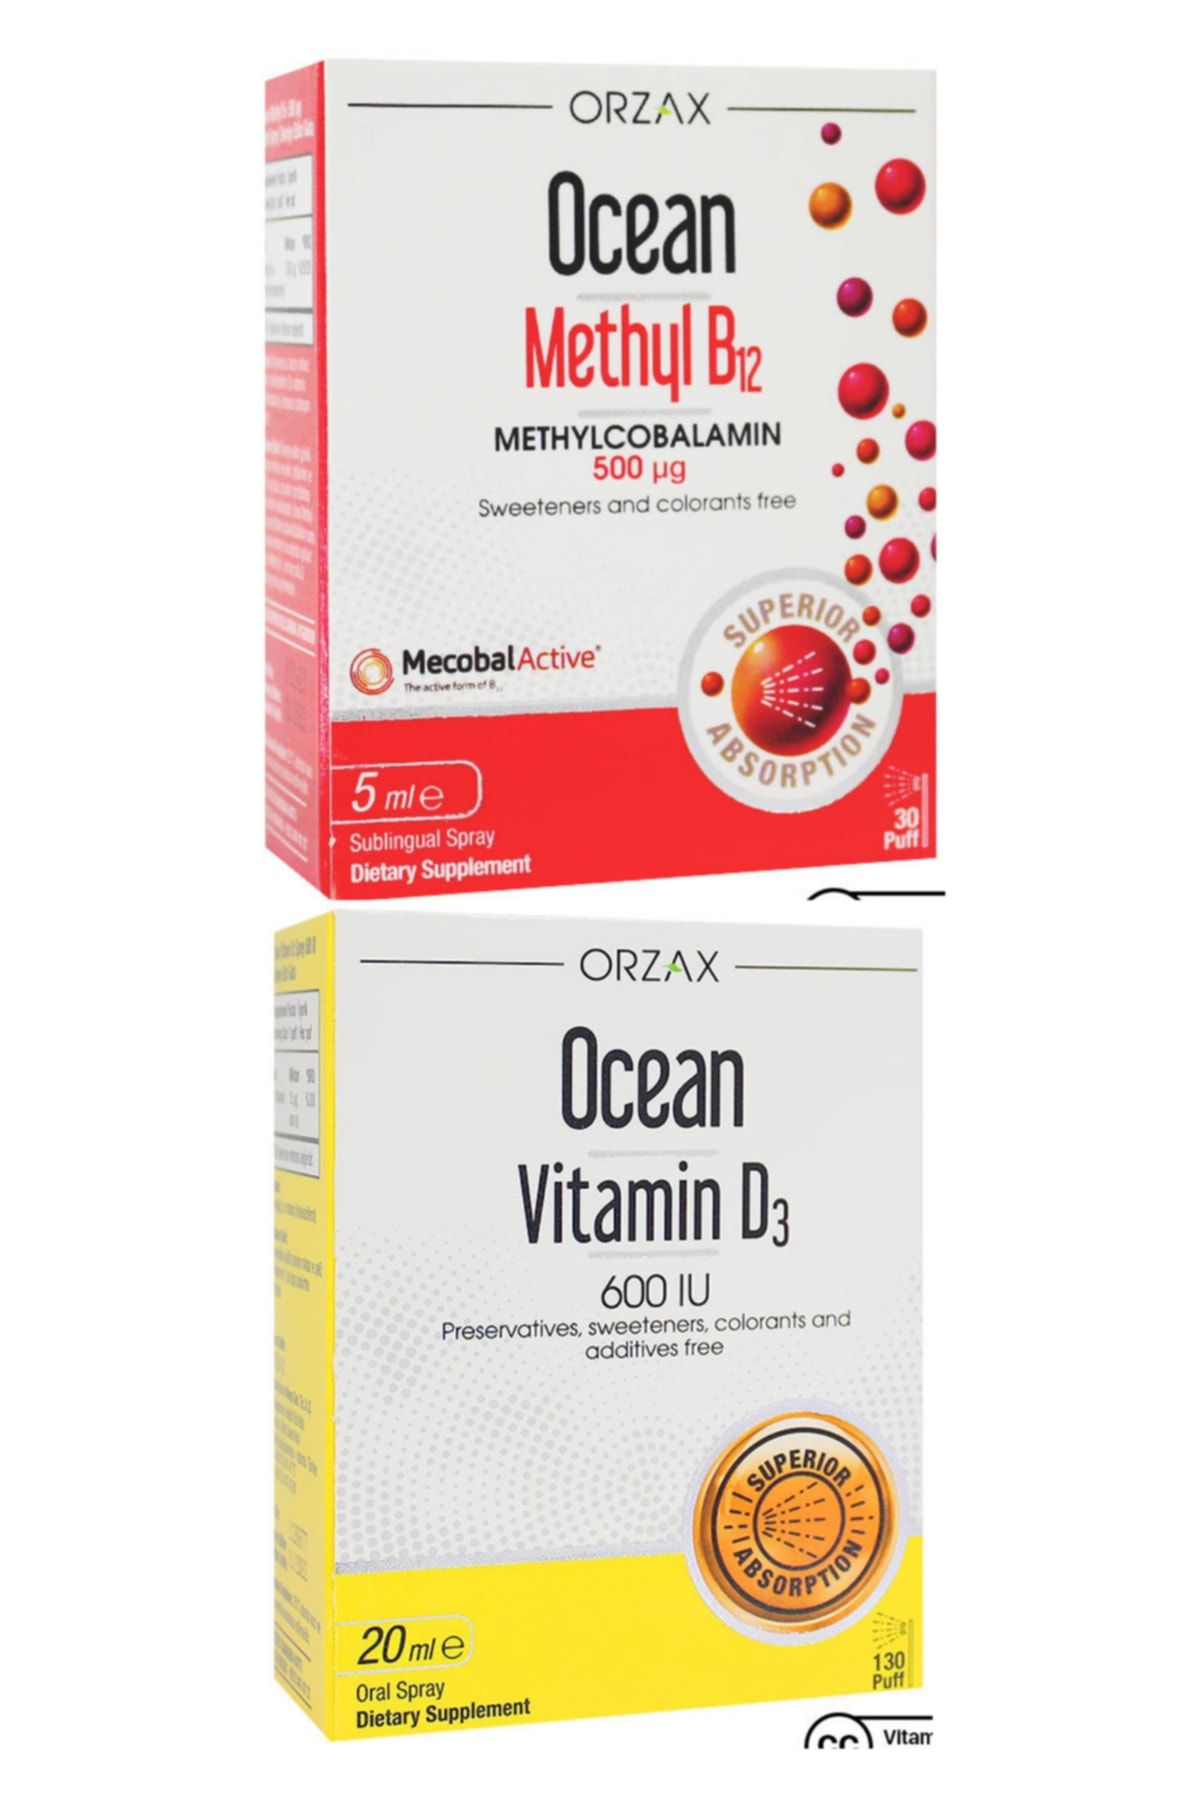 Ocean Methyl B12 Sprey 500mcg 5ml + Vitamin D3 600ıu Sprey 20ml